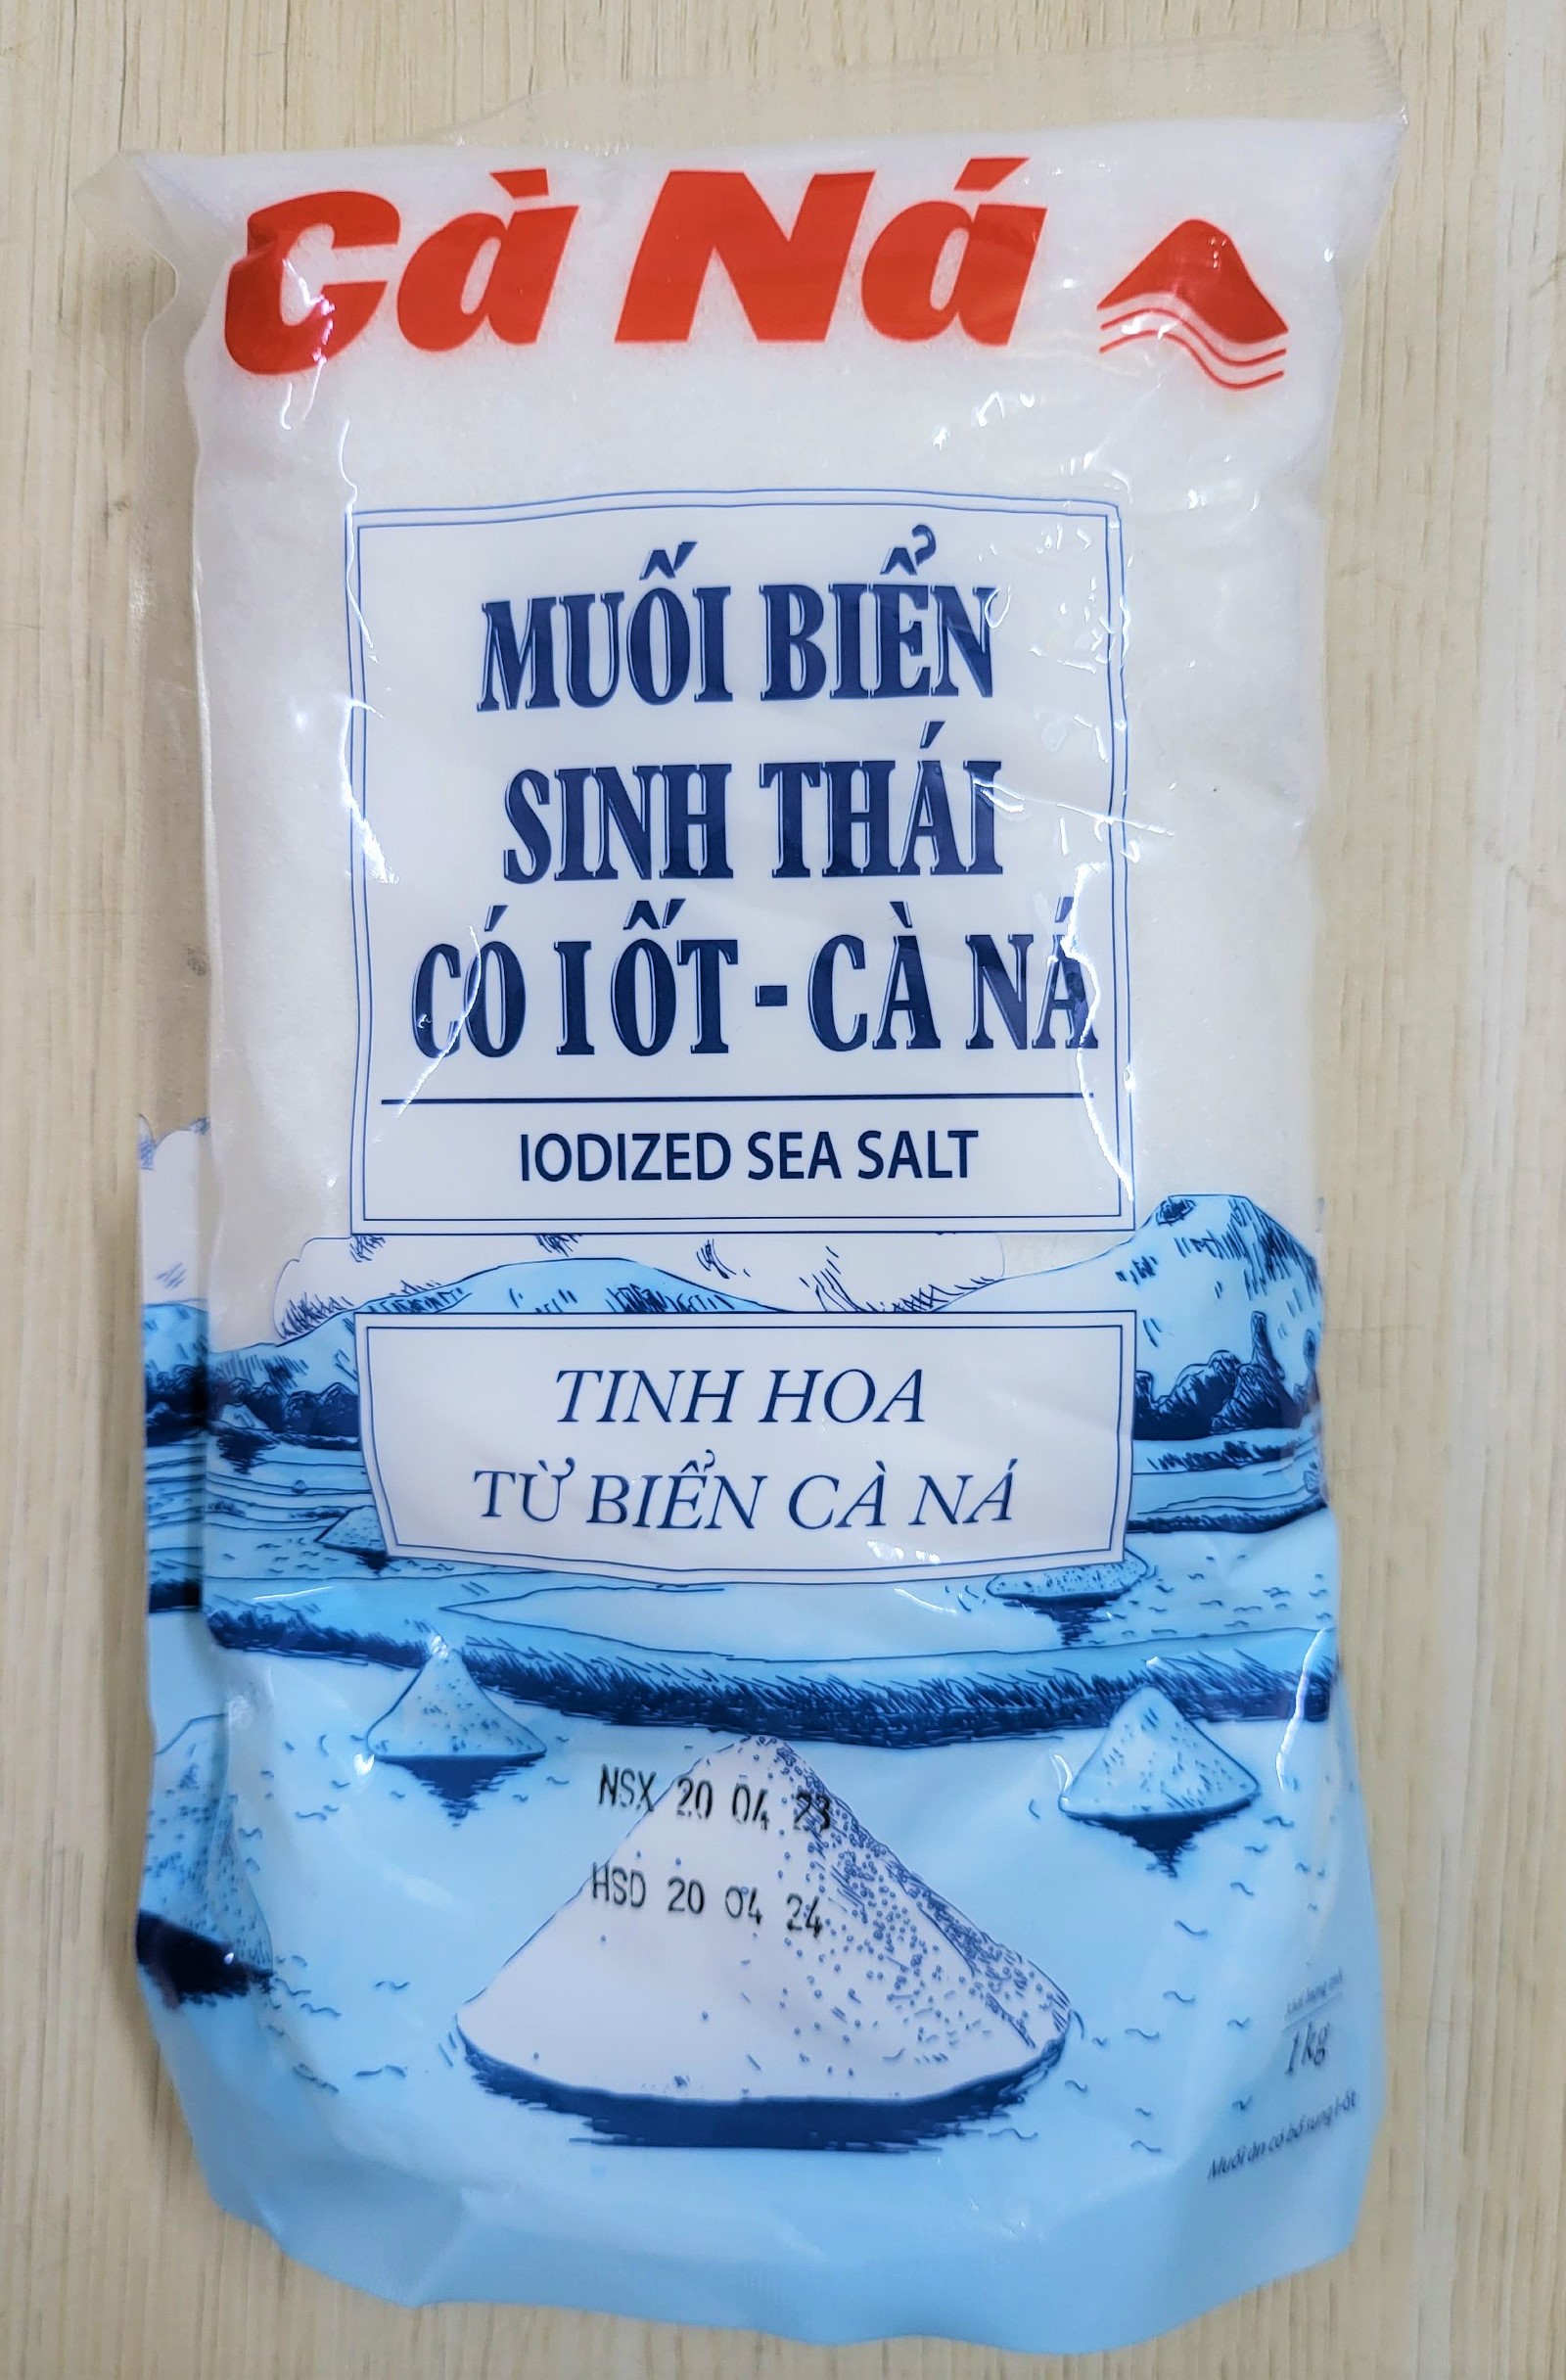 CÀ NÁ túi 1 Kg MUỐI BIỂN SINH THÁI CÓ I ỐT Iodized Sea Salt